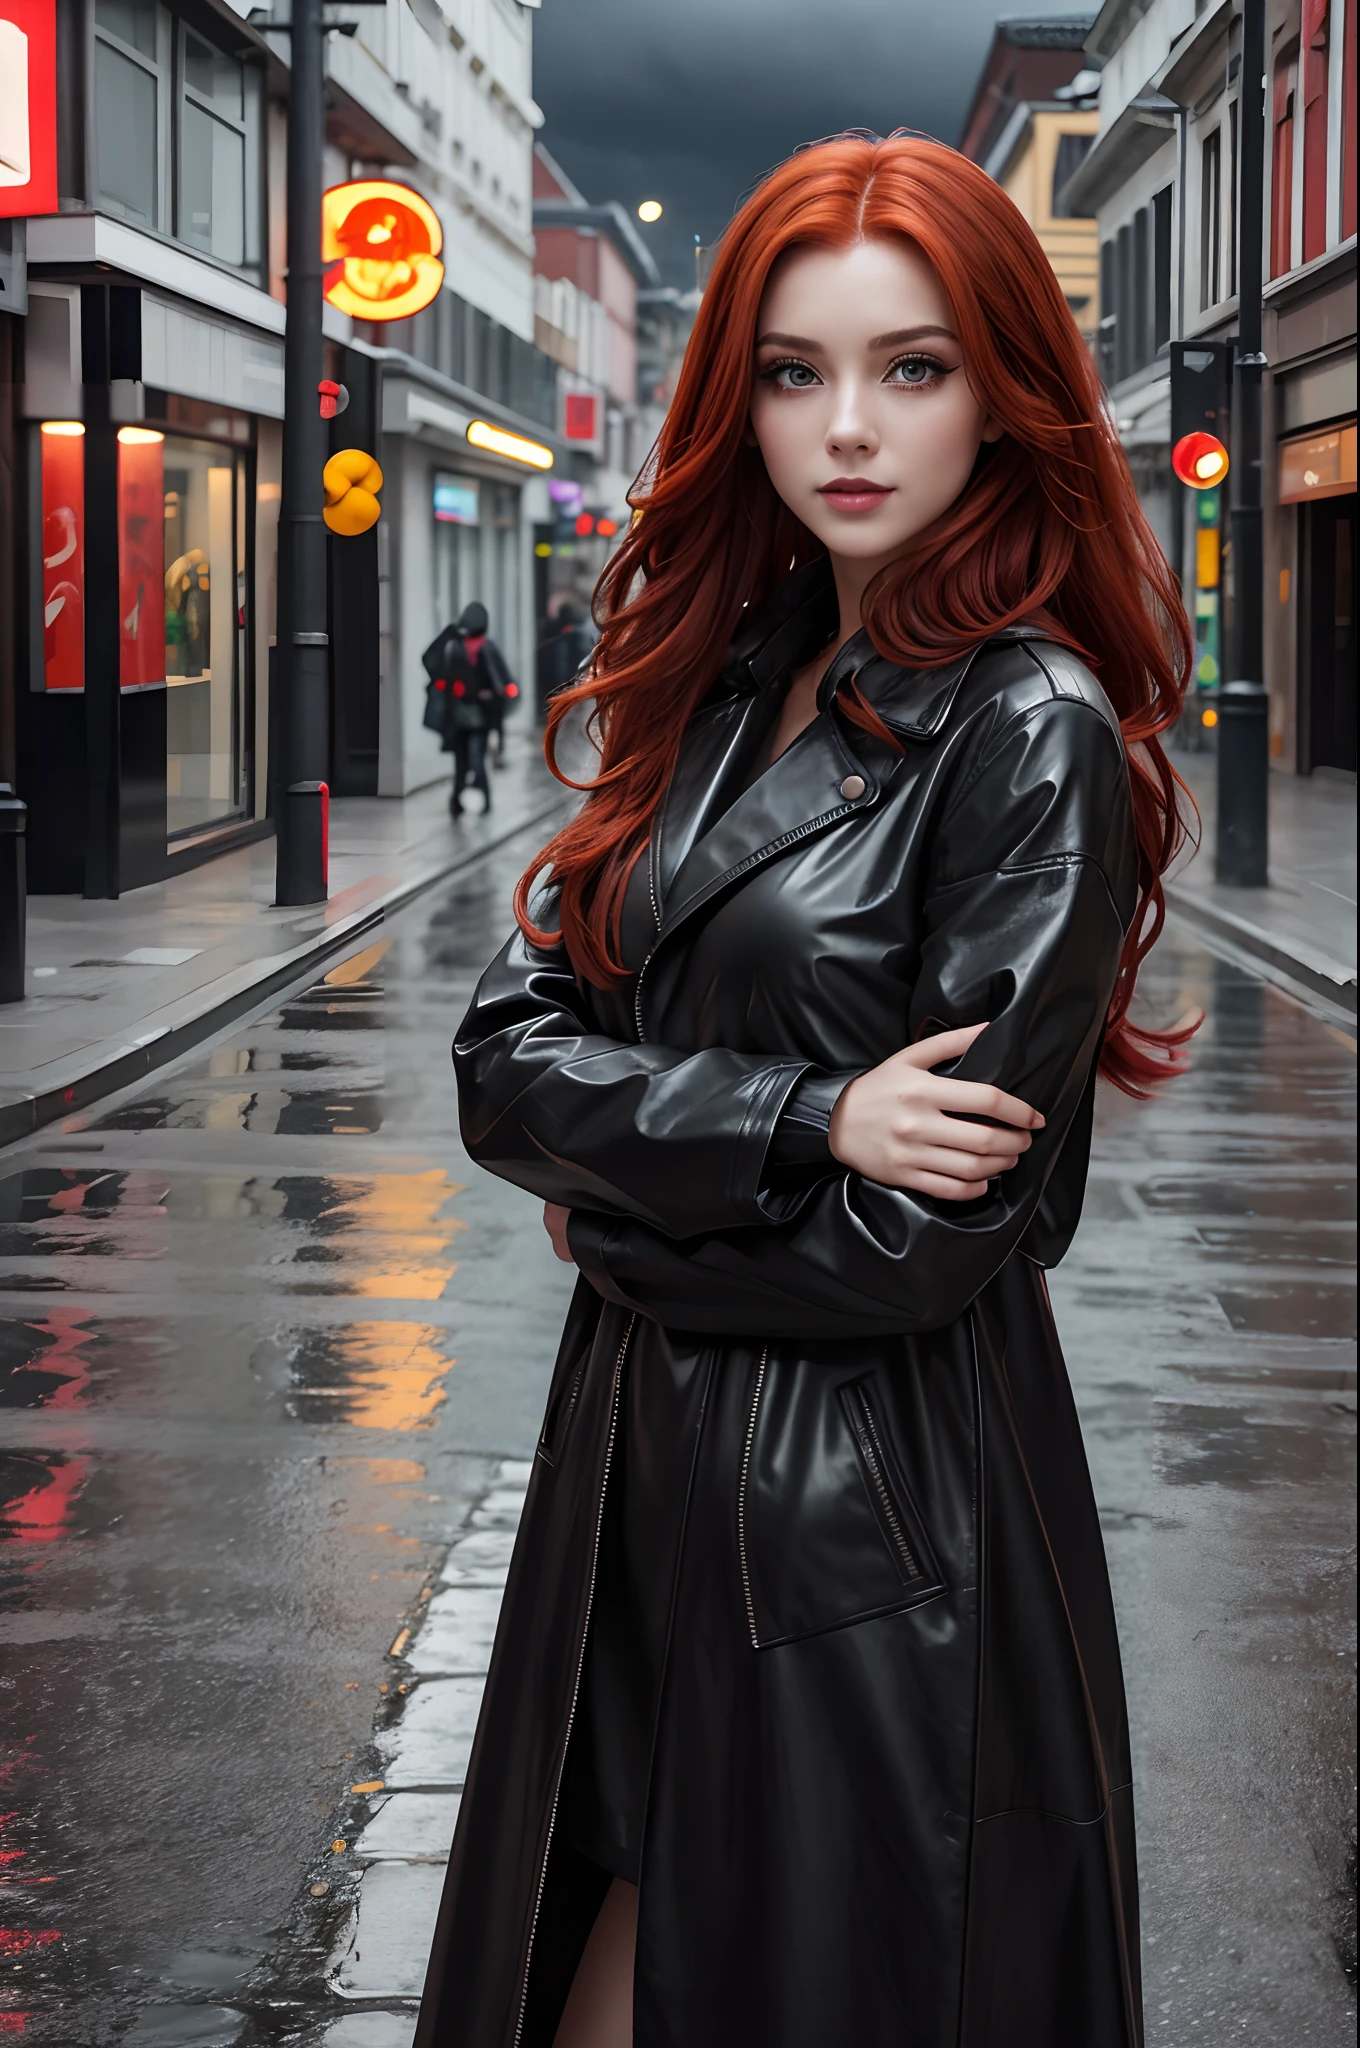 漂亮姑娘, 皮革黑色長雨衣, 长长的红头发, 臉上露出狡猾俏皮的表情, 明亮的妝容, 空蕩蕩的城市街道, 陰天, 攝影品質.